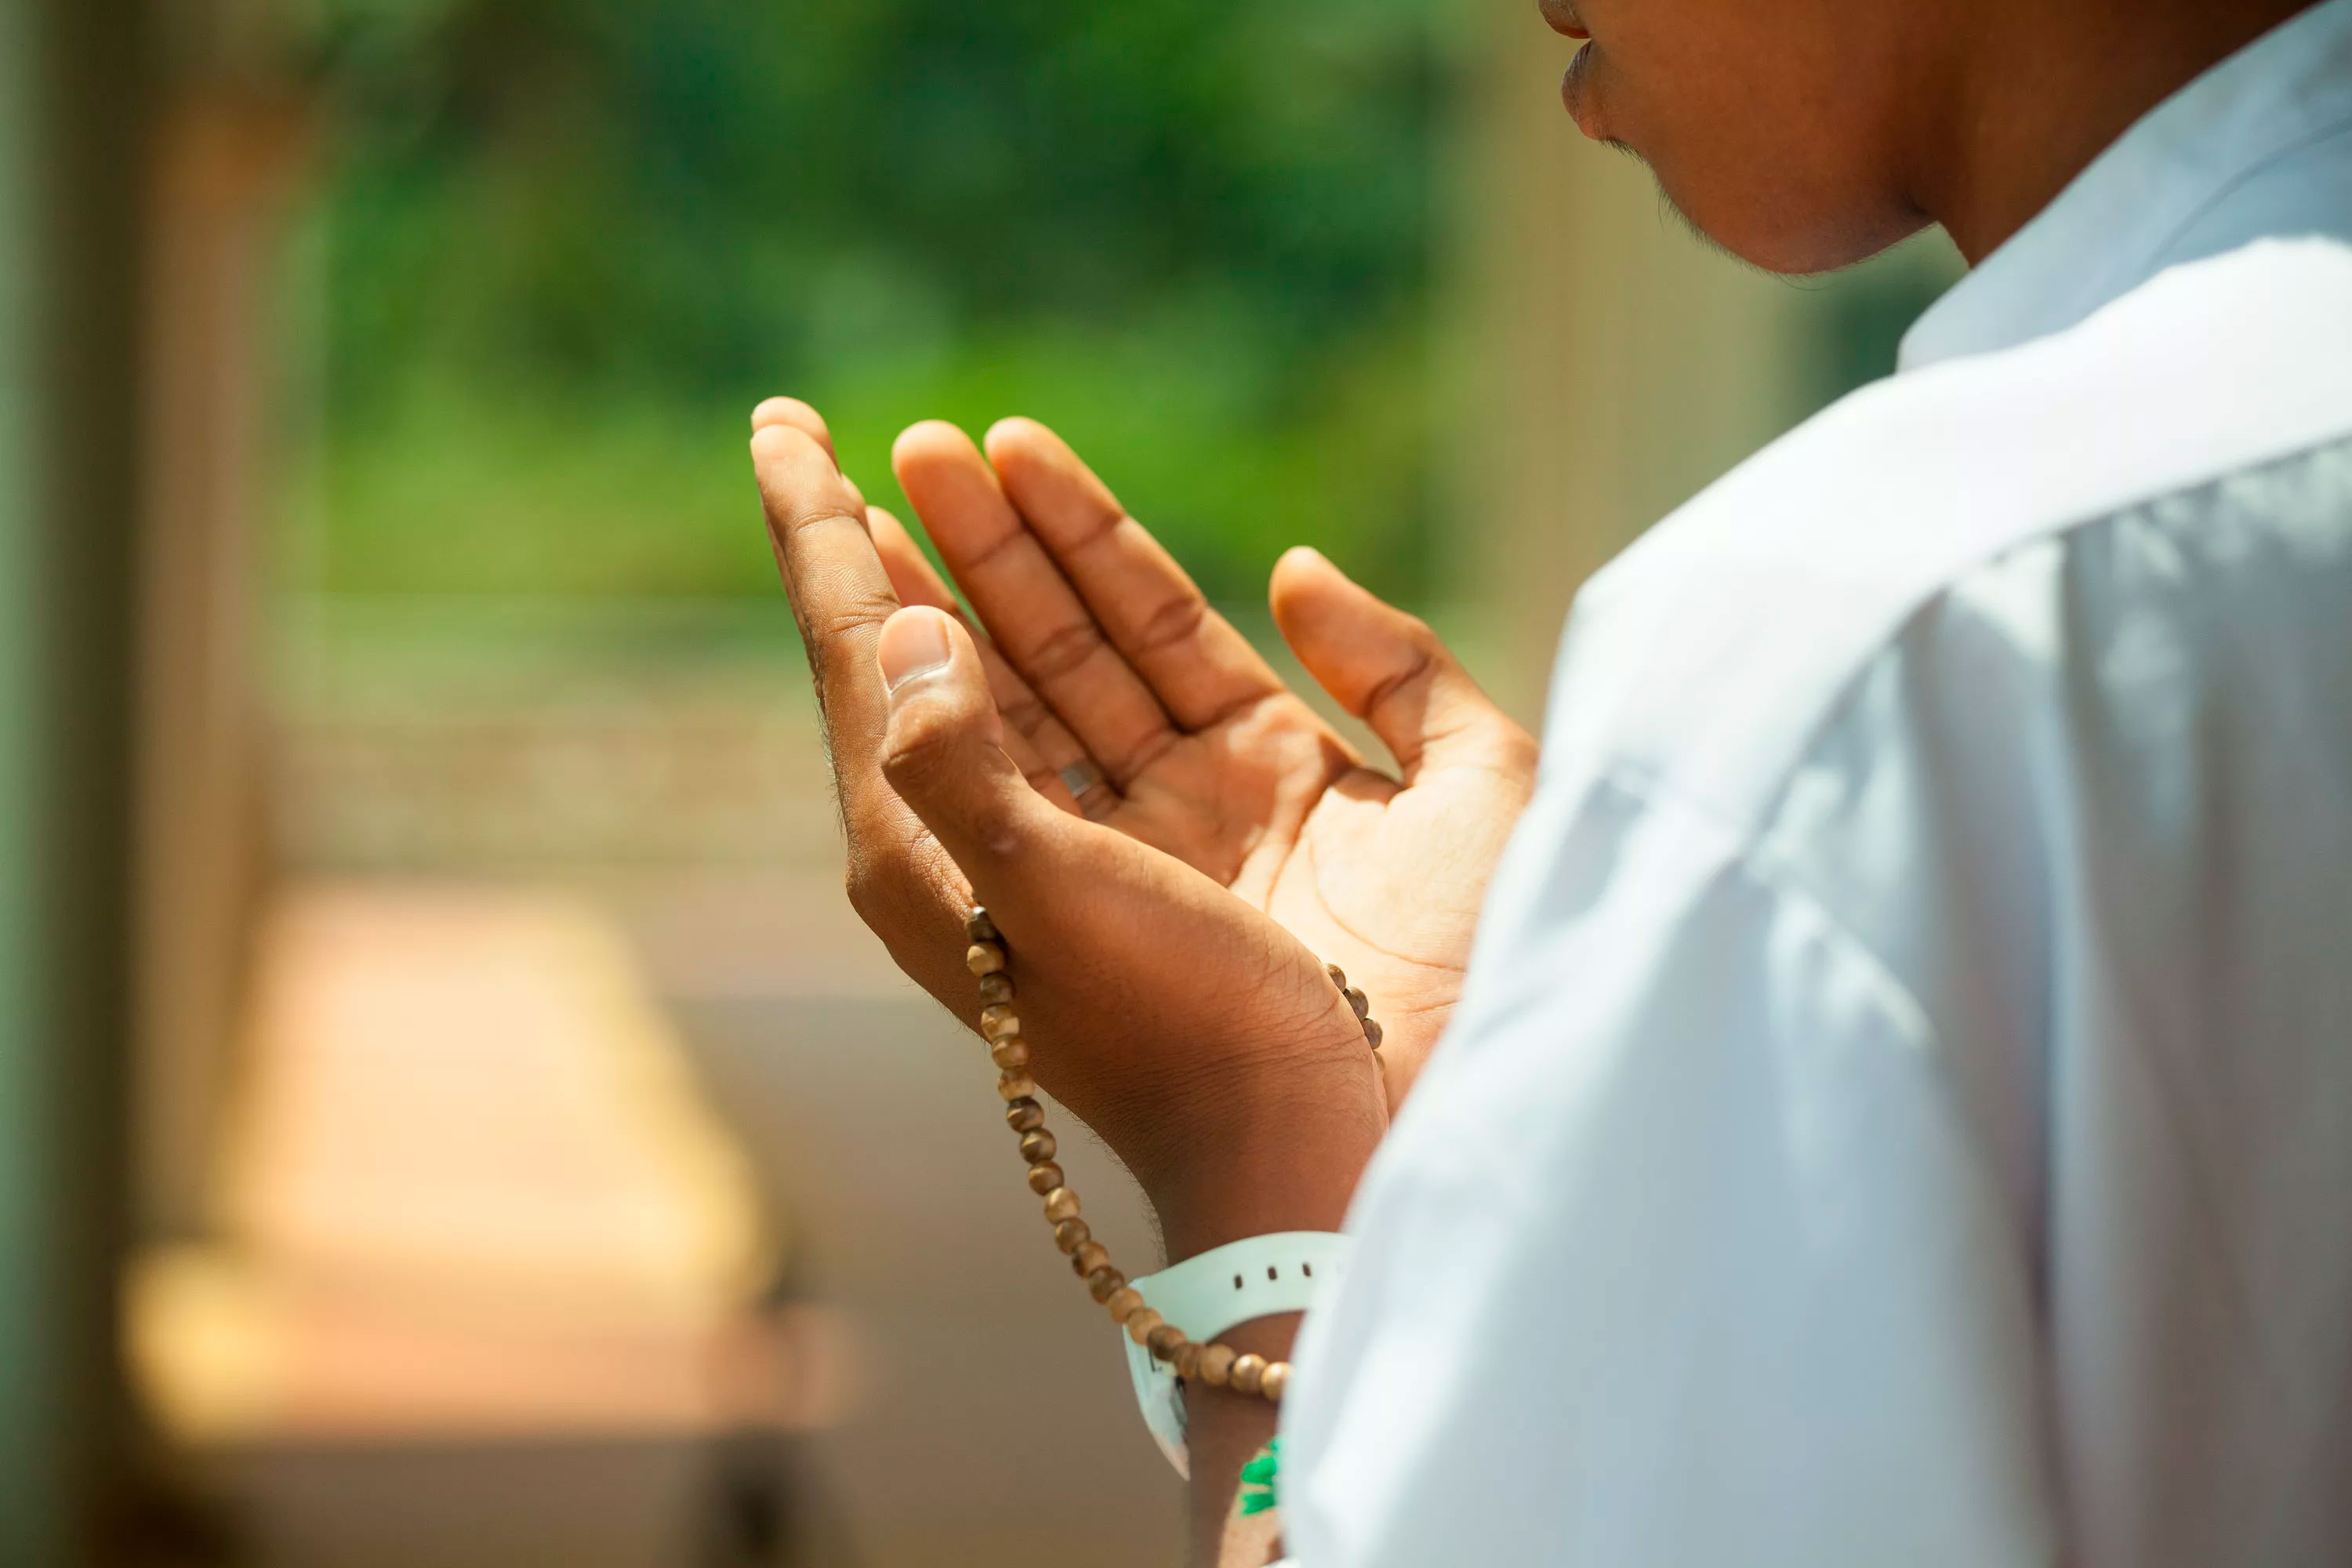 LGS sınavına girerken okunacak en etkili dua 2022 | LGS başarı duası, LGS öncesi dua